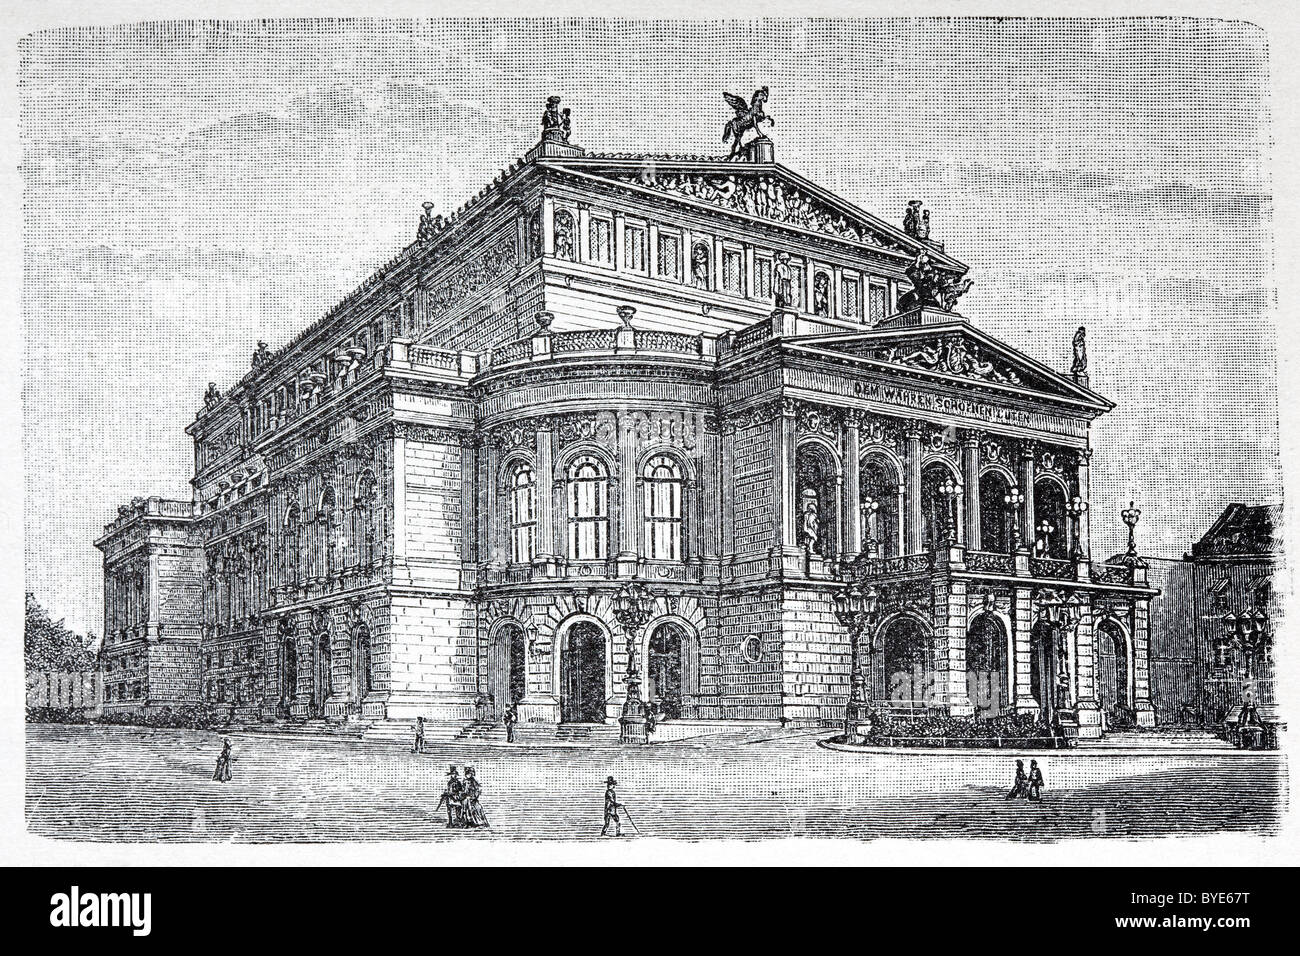 Alte Oper, Oper Haus, Frankfurt Am Main, Hessen, historische Buchillustration aus dem 19. Jahrhundert, Stahlstich Stockfoto